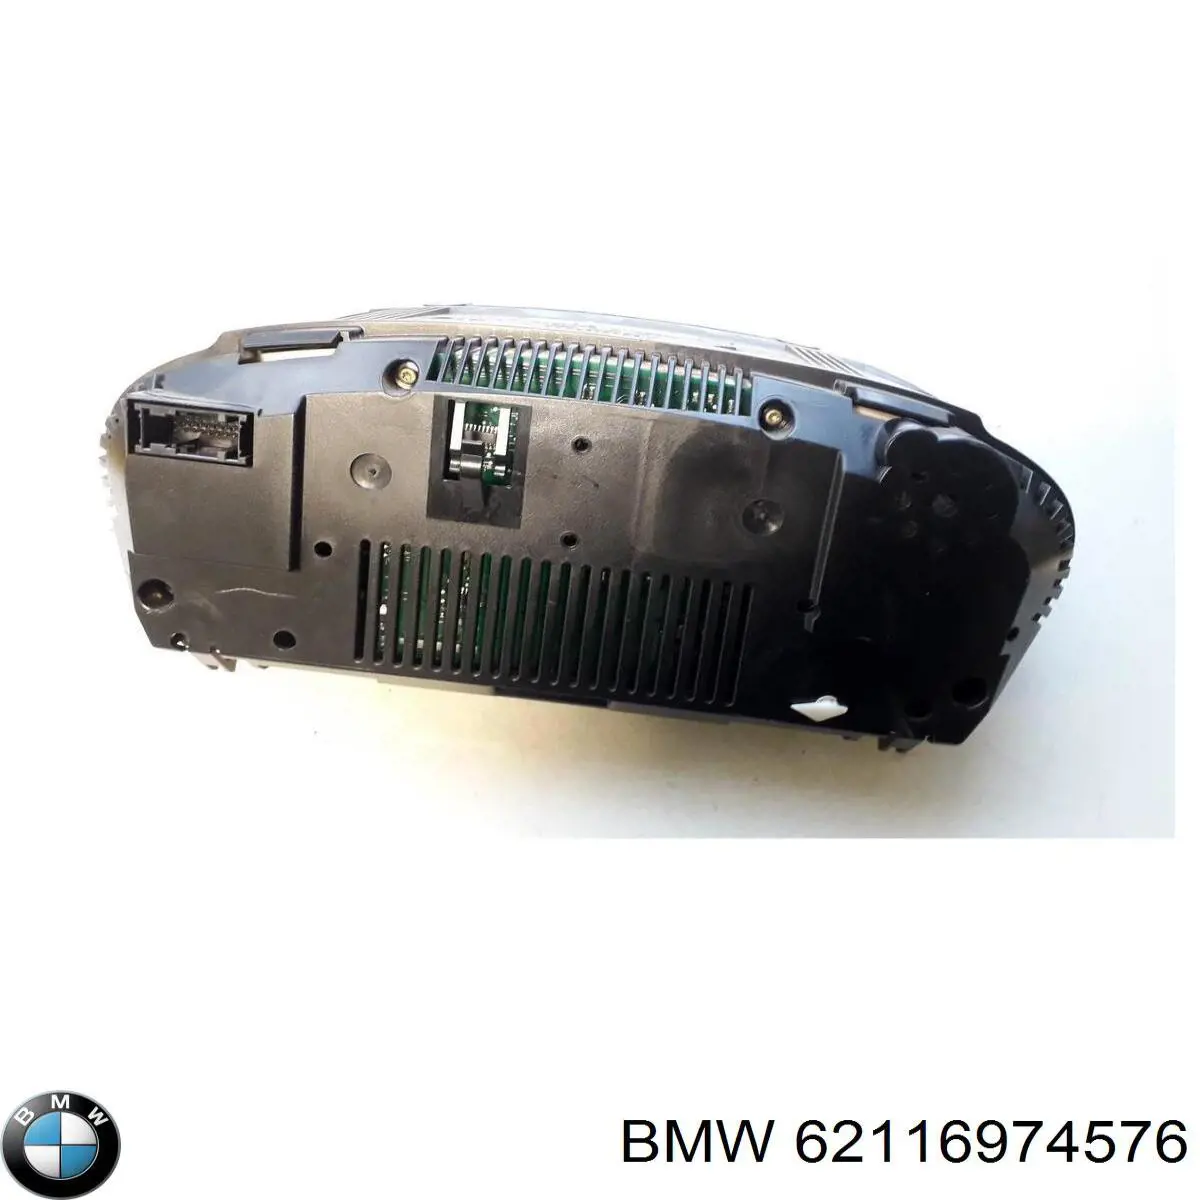 62109177261 BMW tablero de instrumentos (panel de instrumentos)